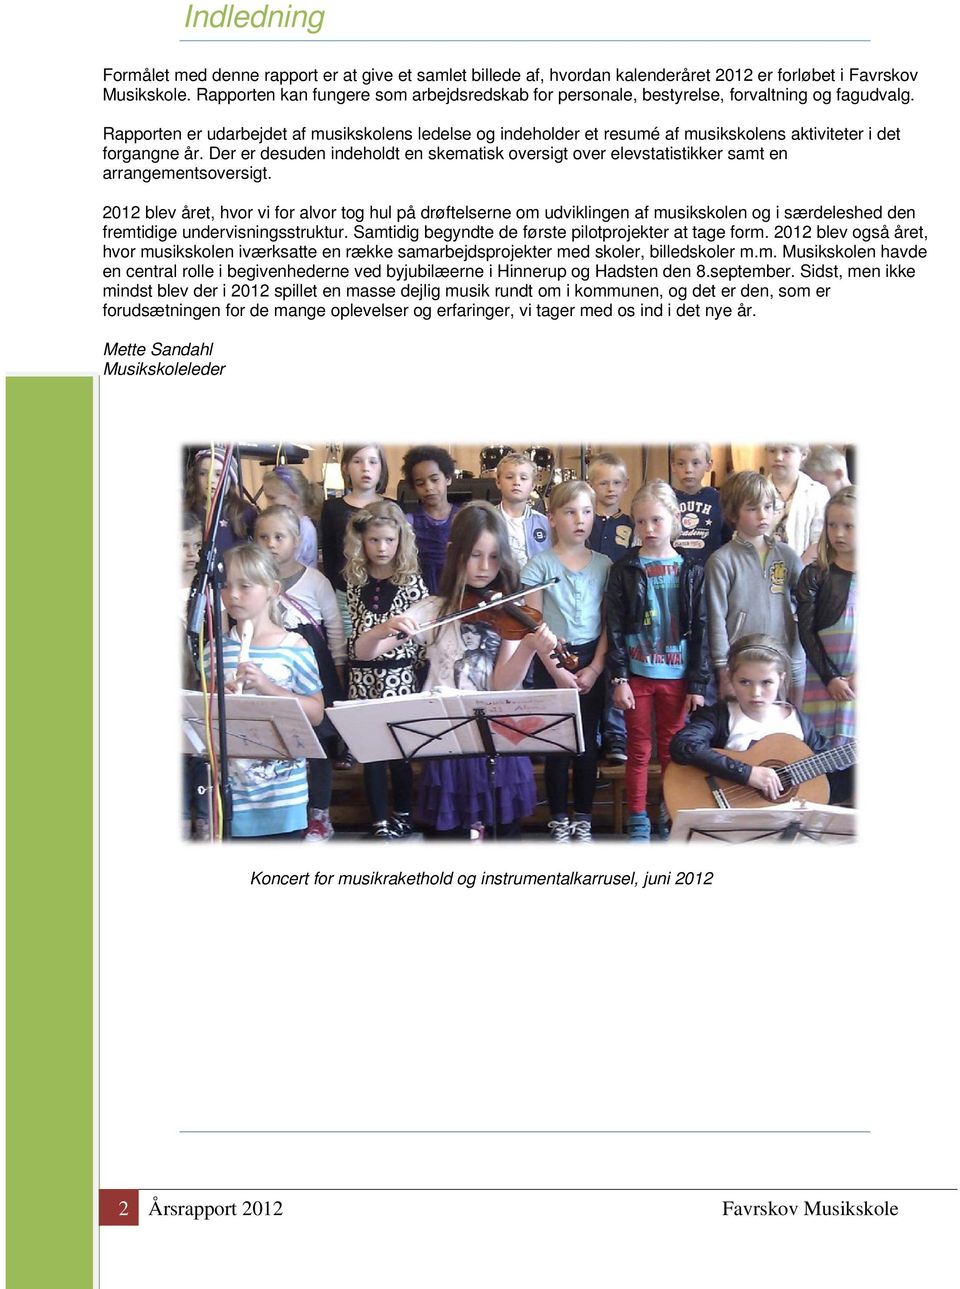 Rapporten er udarbejdet af musikskolens ledelse og indeholder et resumé af musikskolens aktiviteter i det forgangne år.